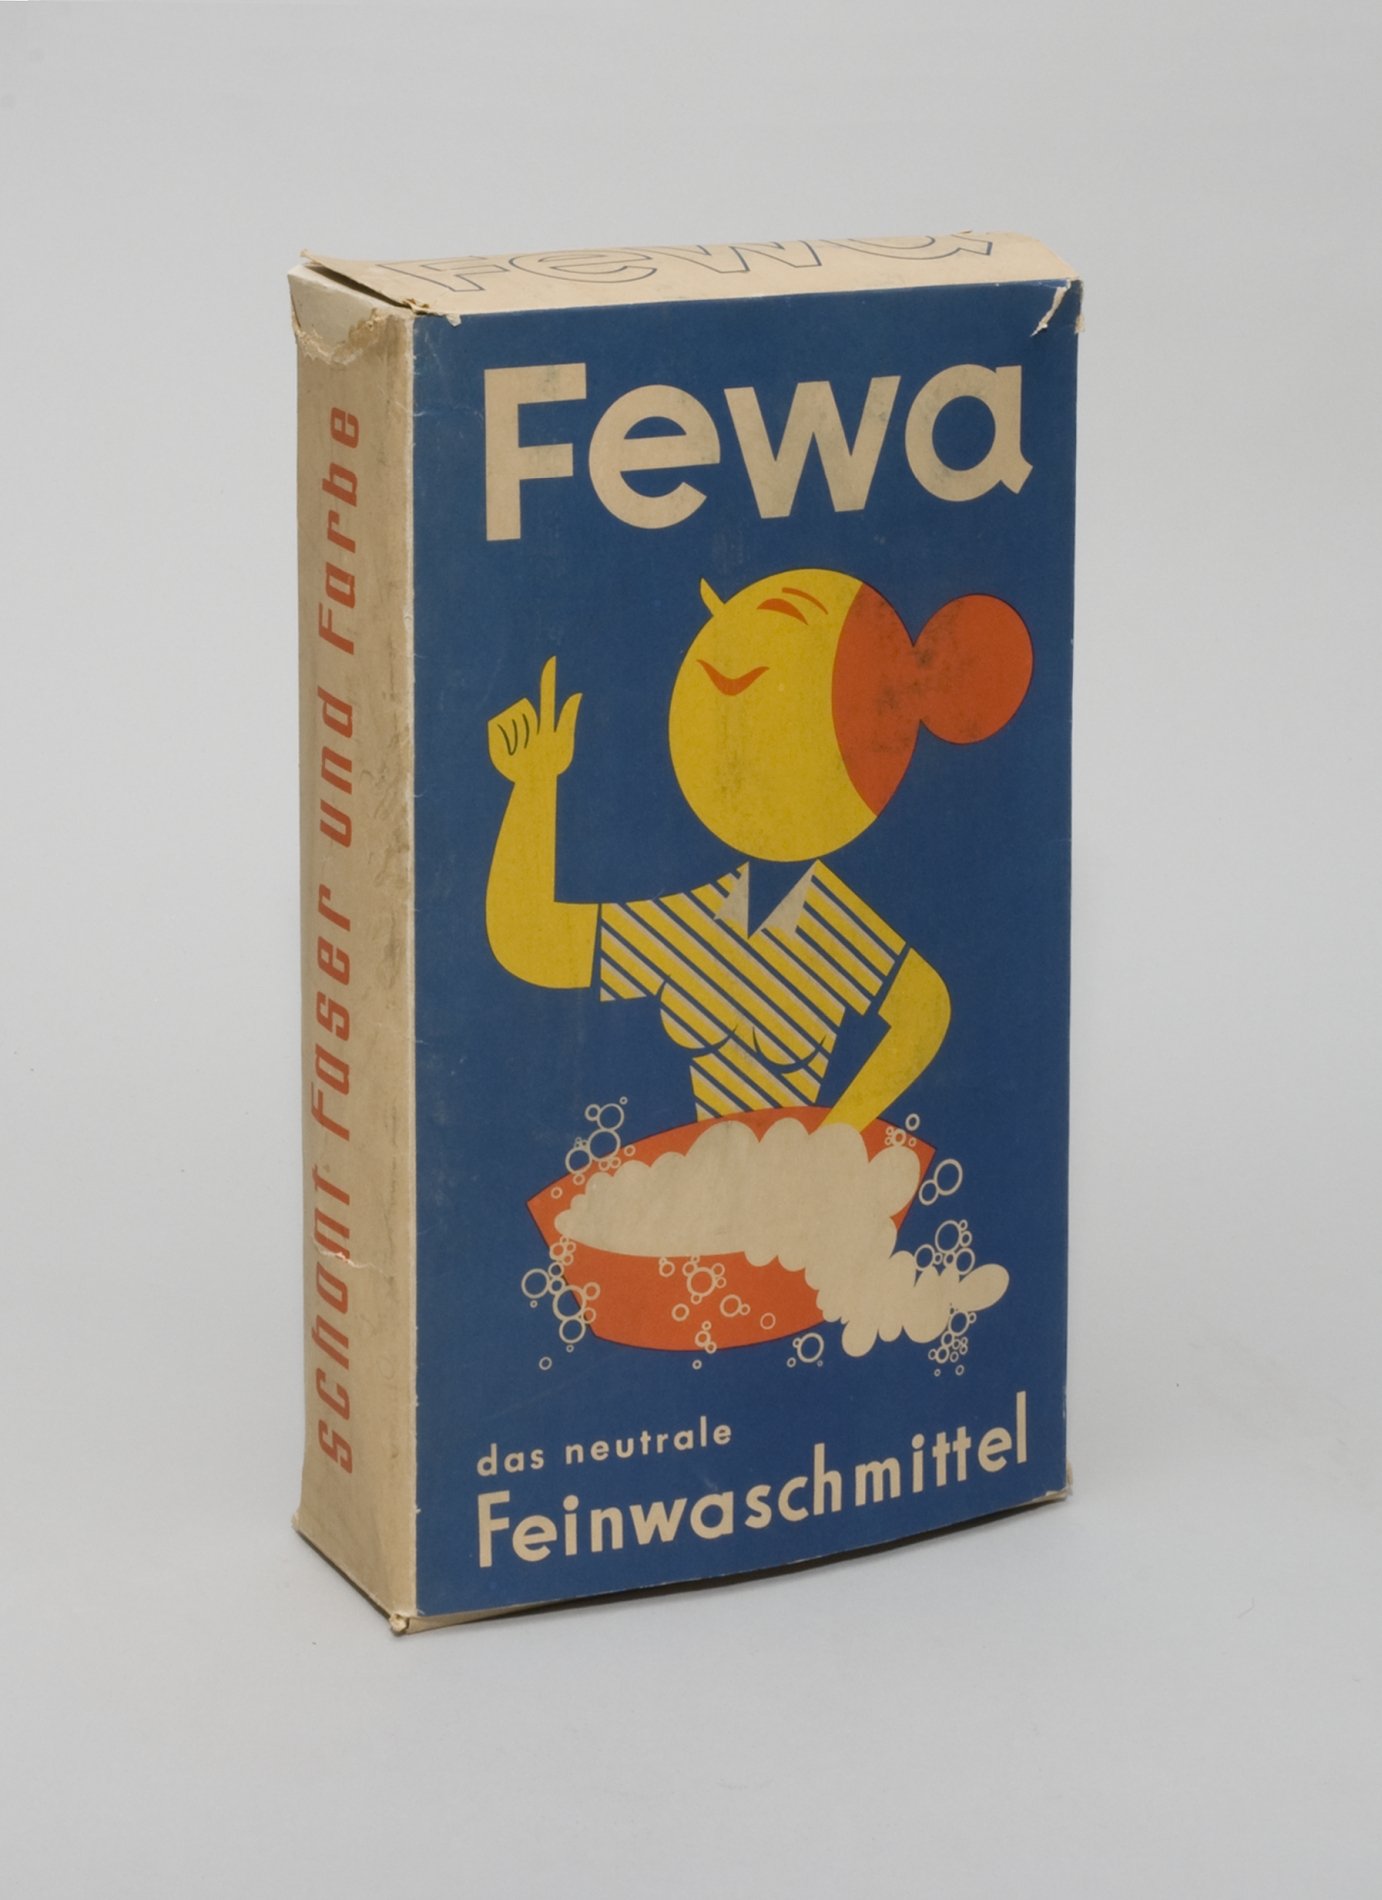 Verpackung für "Fewa" Feinwaschmittel (Stiftung Domäne Dahlem - Landgut und Museum, Weiternutzung nur mit Genehmigung des Museums CC BY-NC-SA)